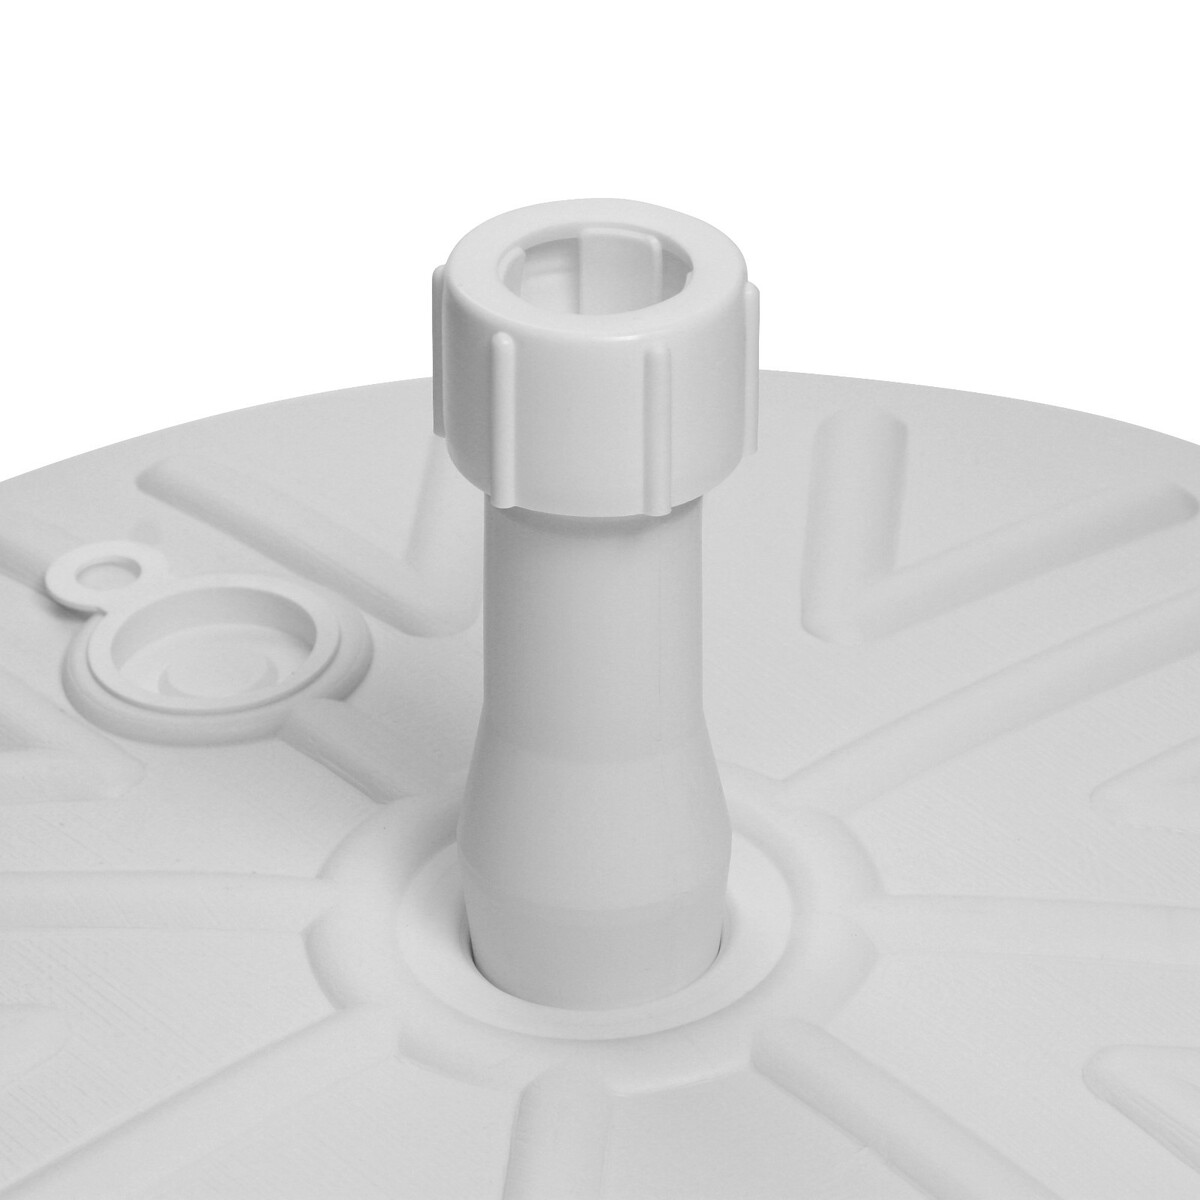 Подставка под зонт круглая белая, диаметр 49 см, высота 10 см No brand 08752158 - фото 3